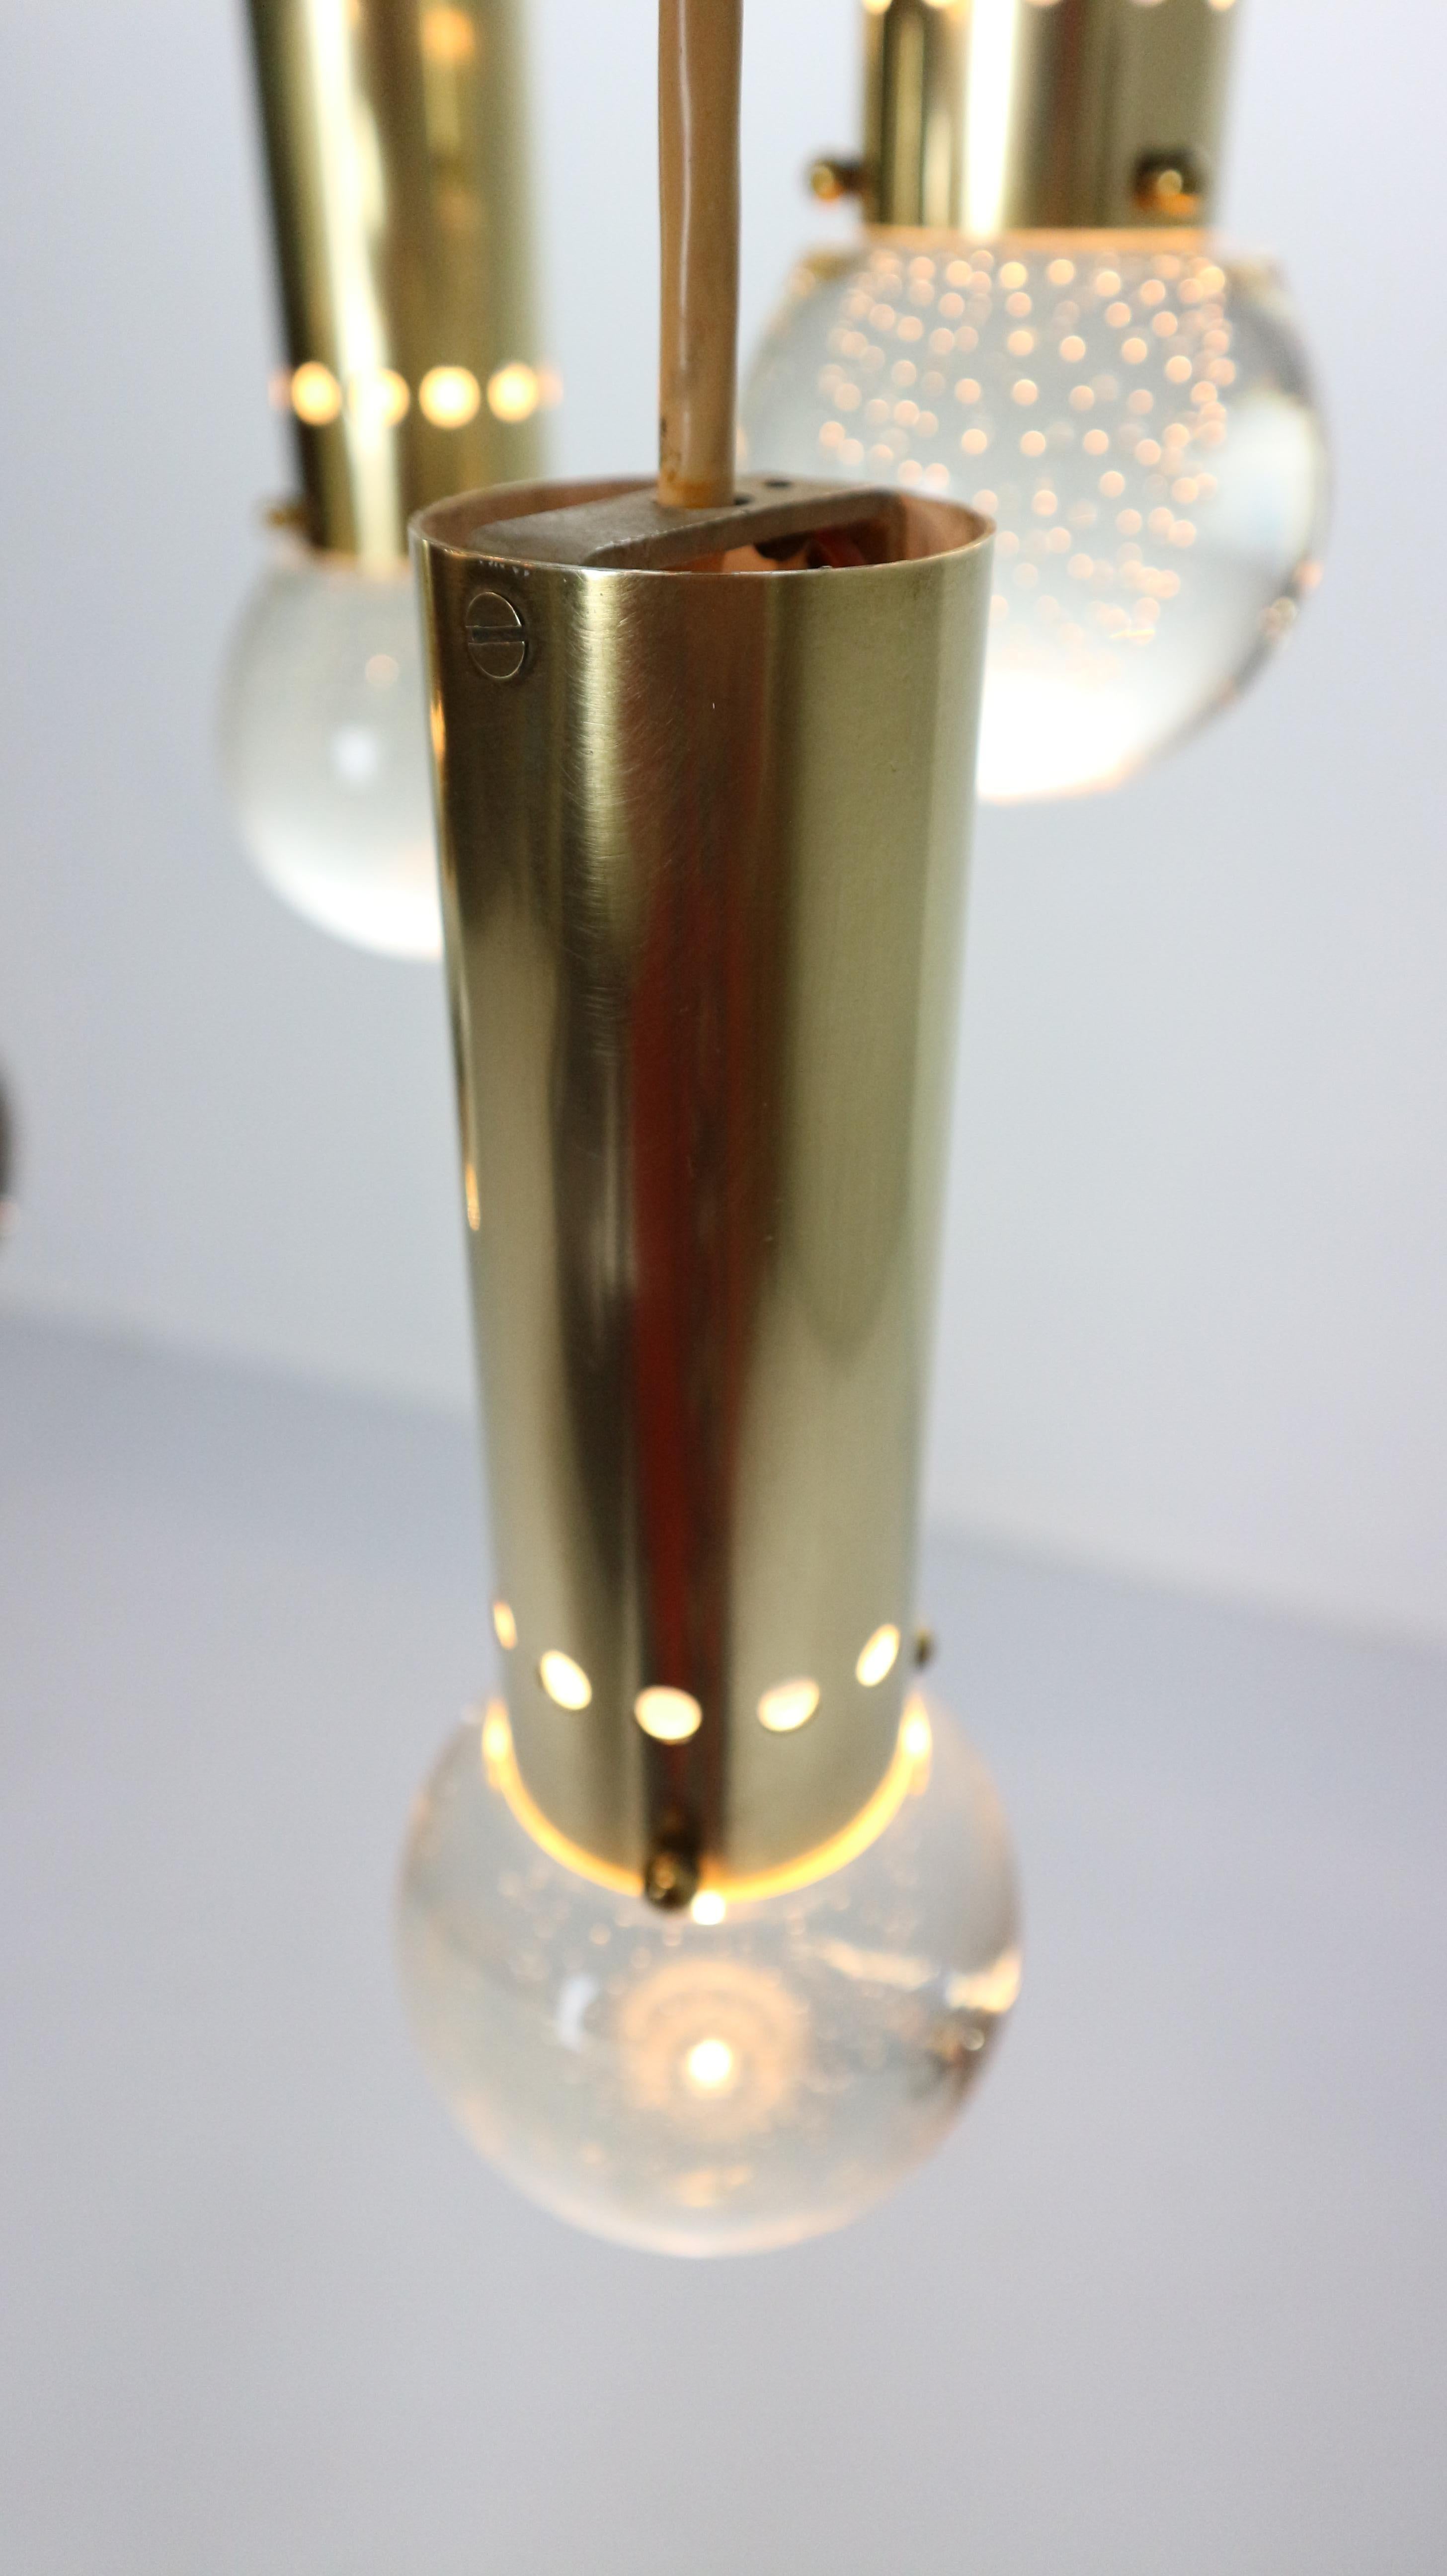 Gino Sarfatti SP/ 16 For Arteluce Unique Brass Bubble Pendant Lamp, 1950, Italy For Sale 6